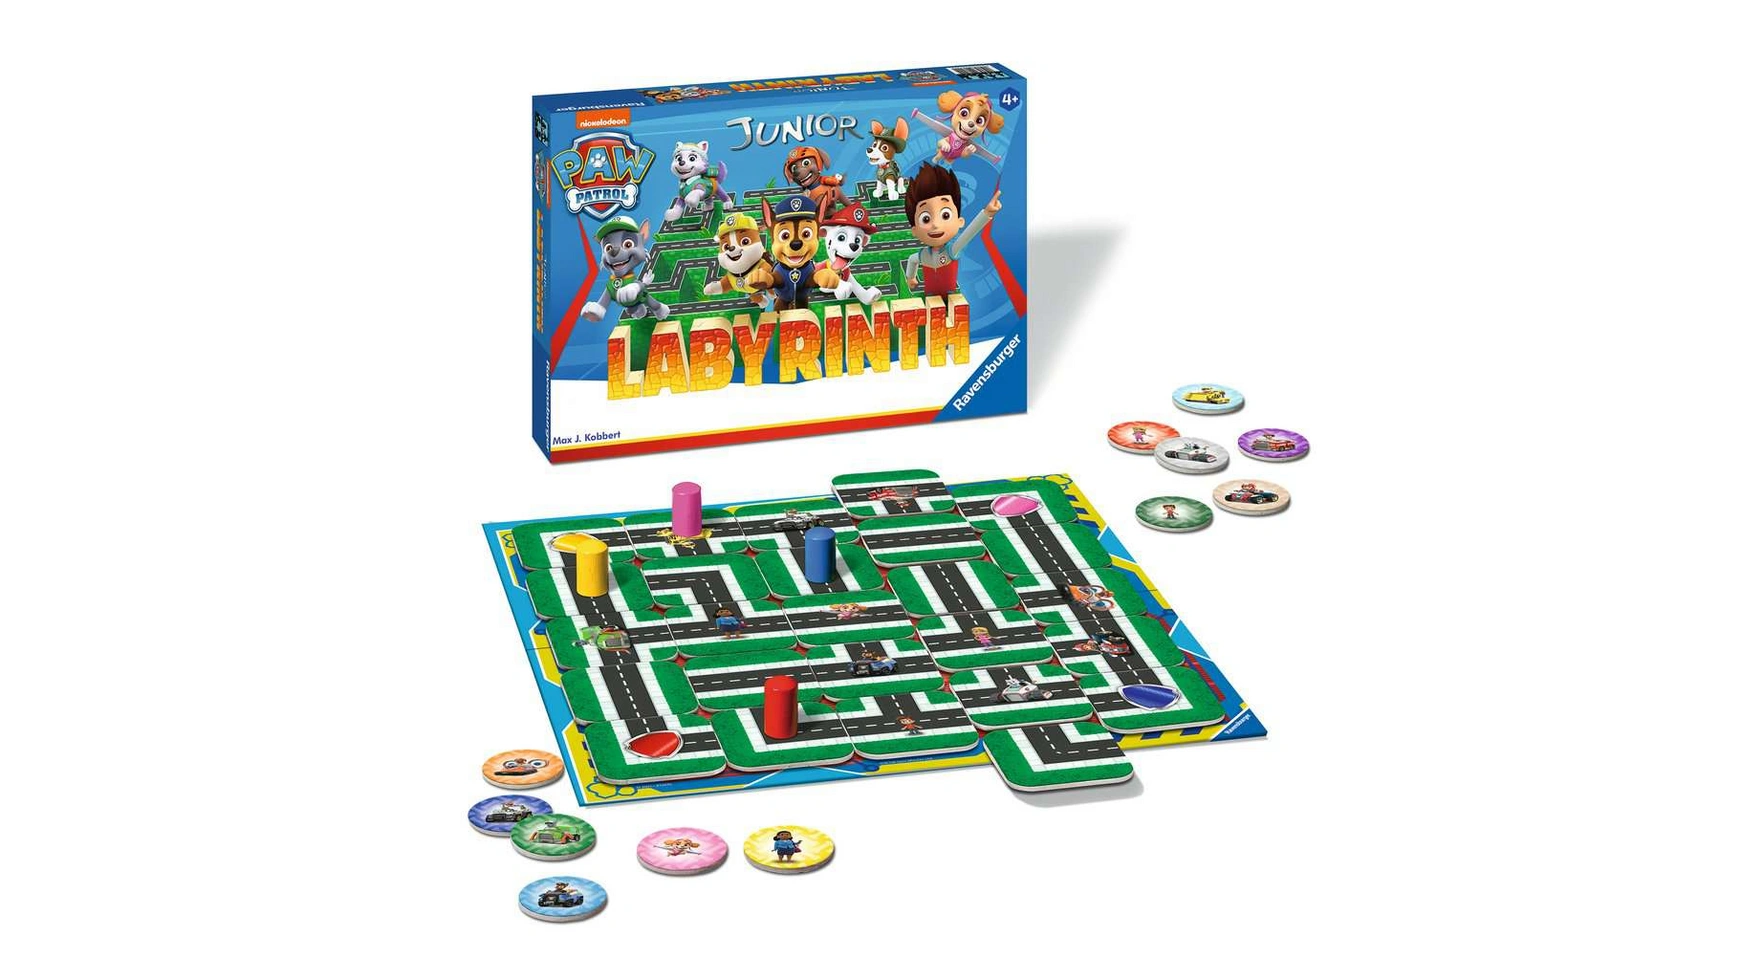 Ravensburger Spiele Paw Patrol Junior Labyrinth, известная настольная игра от Ravensburger в детской версии настольная мини игра лабиринт